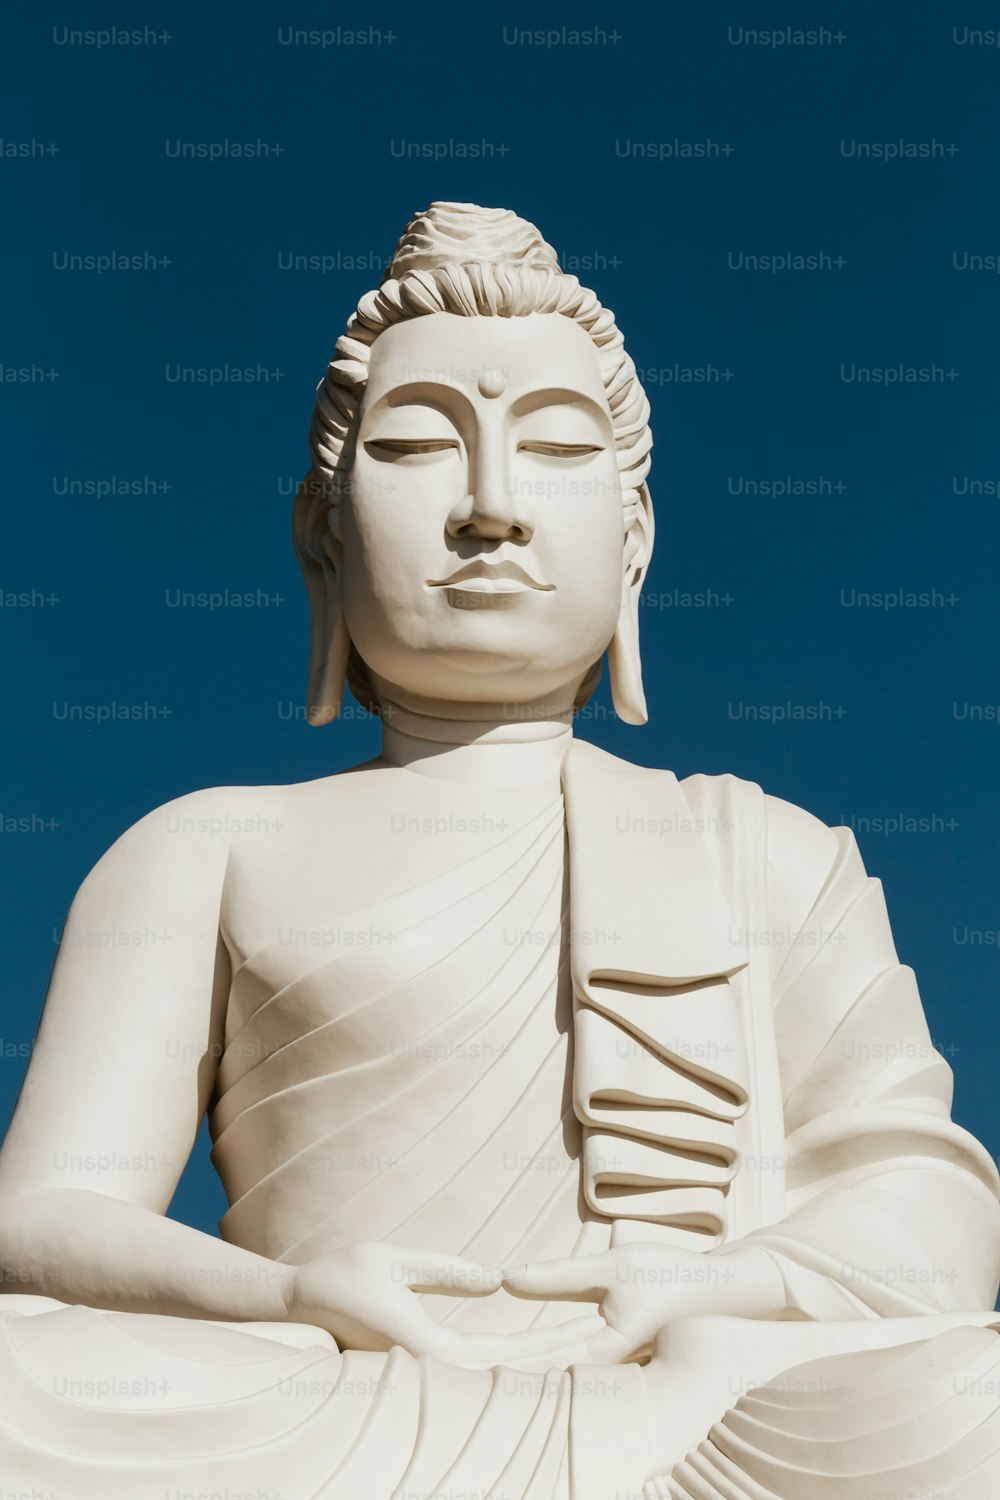 uma grande estátua branca de buddha sentada no topo de uma colina